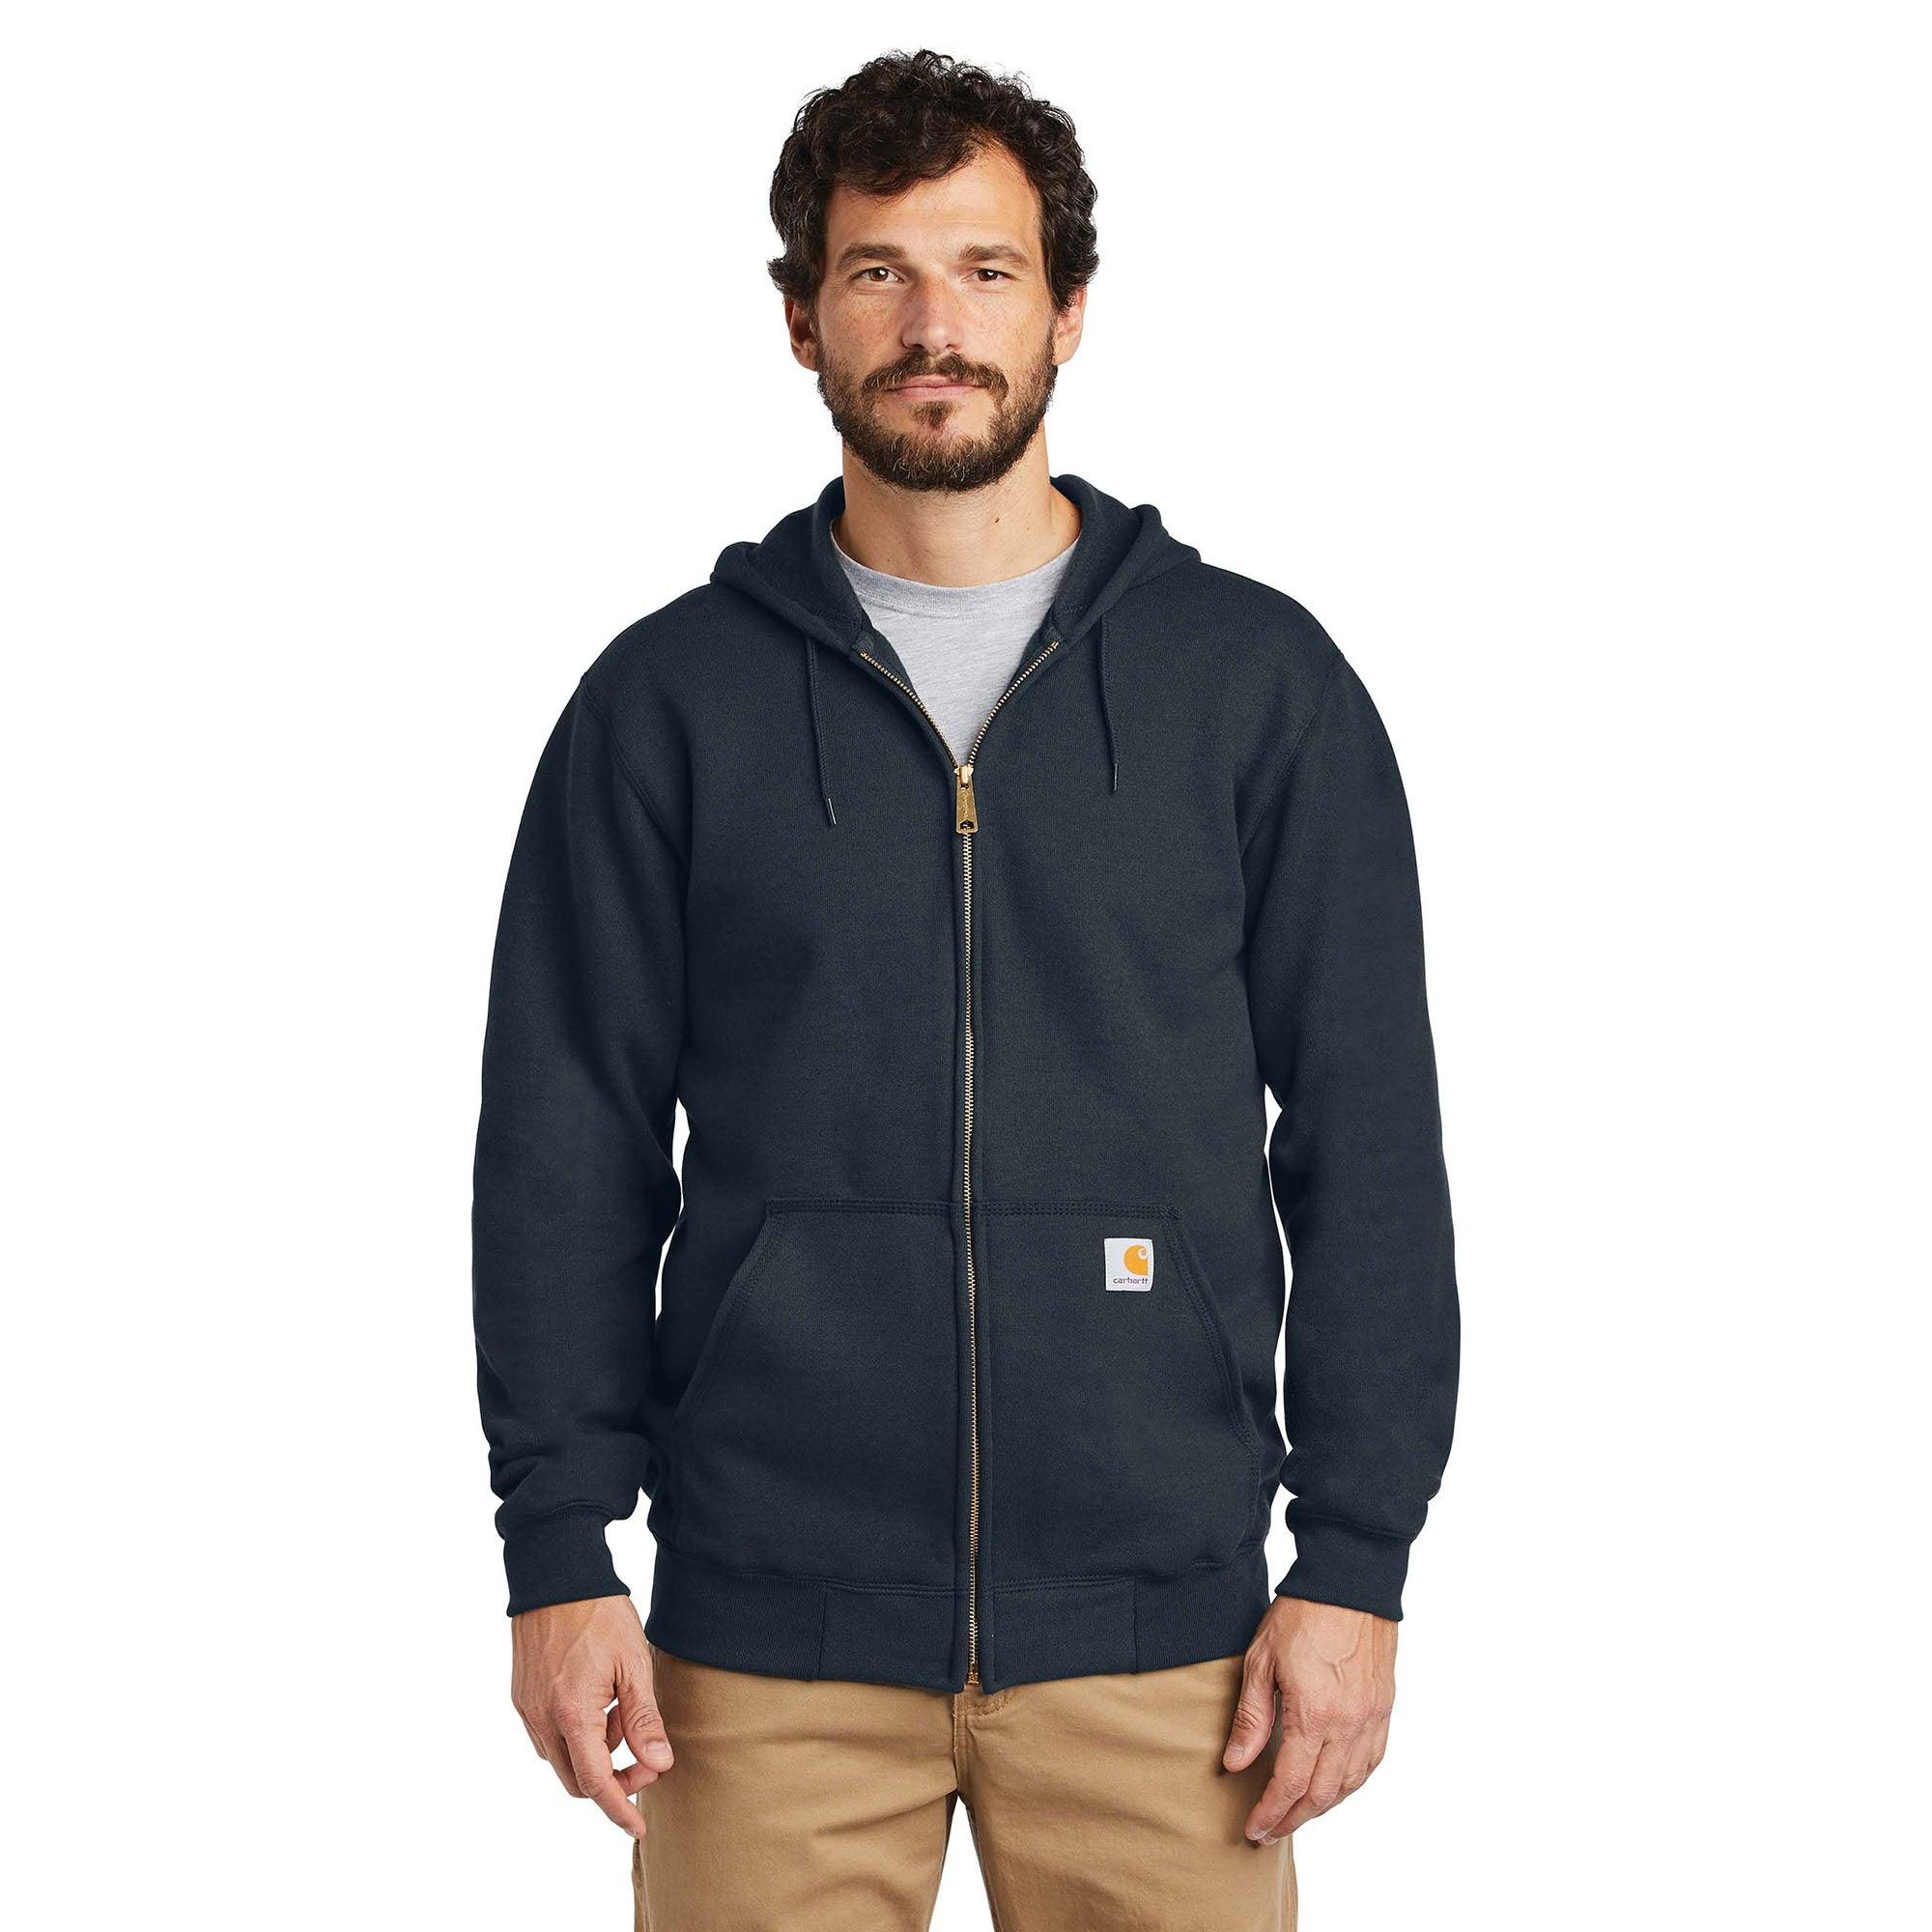 Fleece Hooded Zip Front Sweatshirt - New Navy - Purpose-Built / Home of the Trades